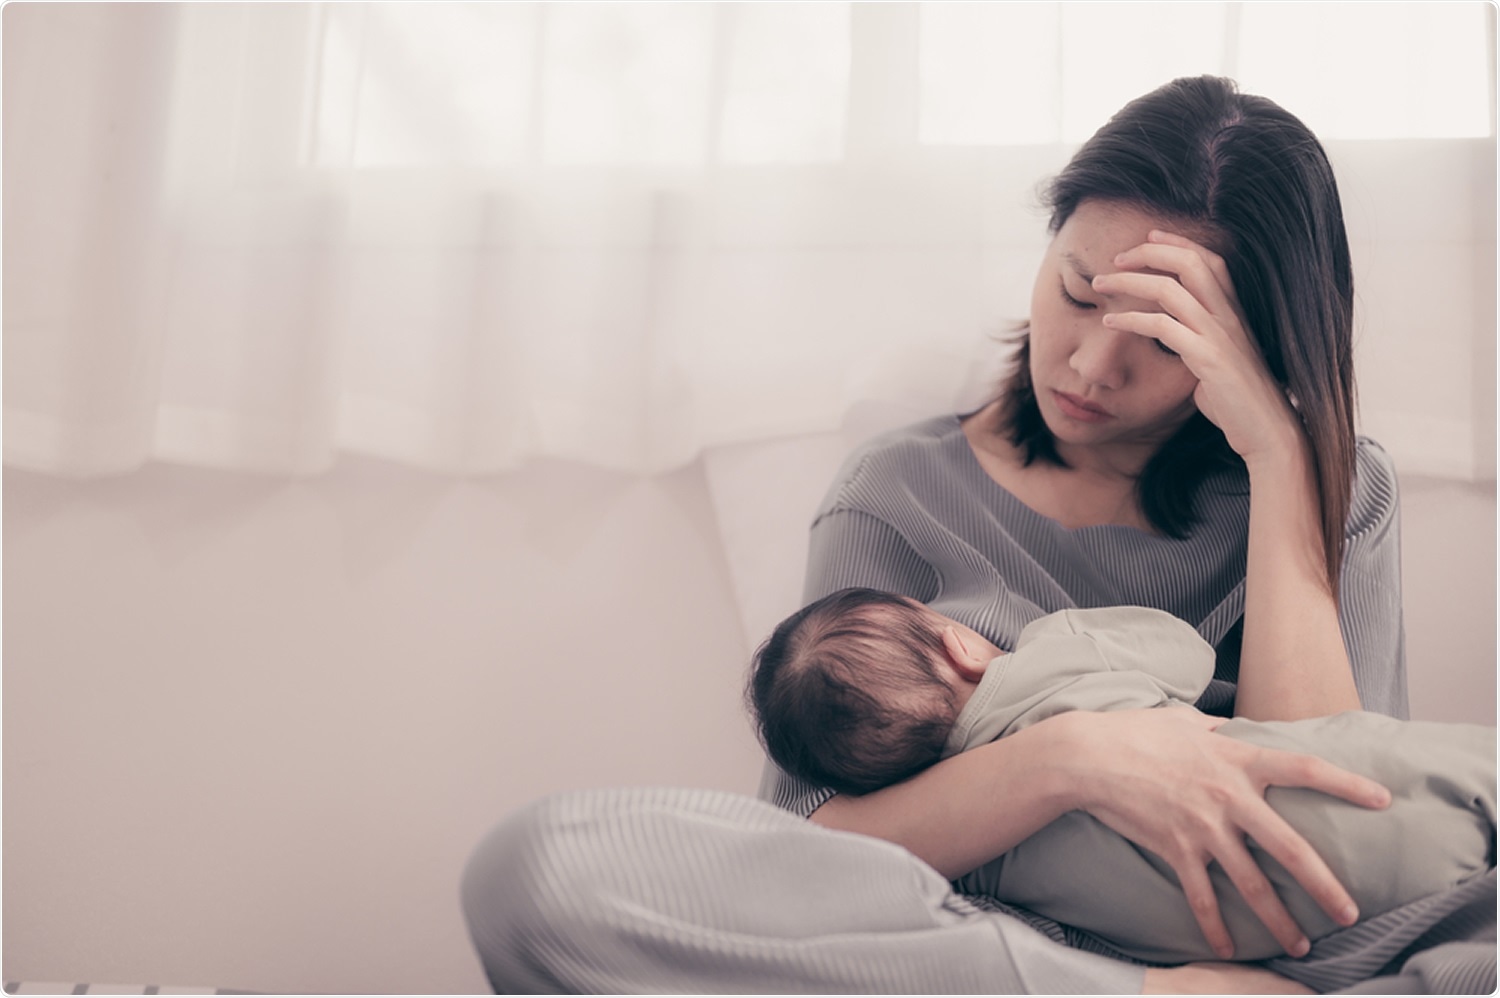 Estudio: El efecto de restricciones sociales, baja del apoyo social, y baja de la autonomía maternal en la depresión postparto en 1 a 12 meses de mujeres postparto durante el pandémico COVID-19. Haber de imagen: GrooveZ/Shutterstock